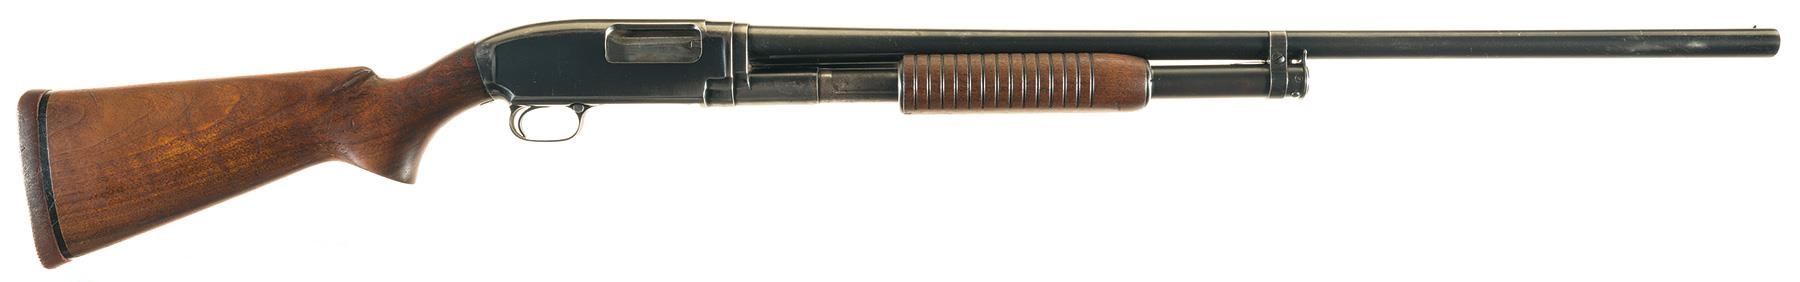 Winchester_Model_1912.jpg